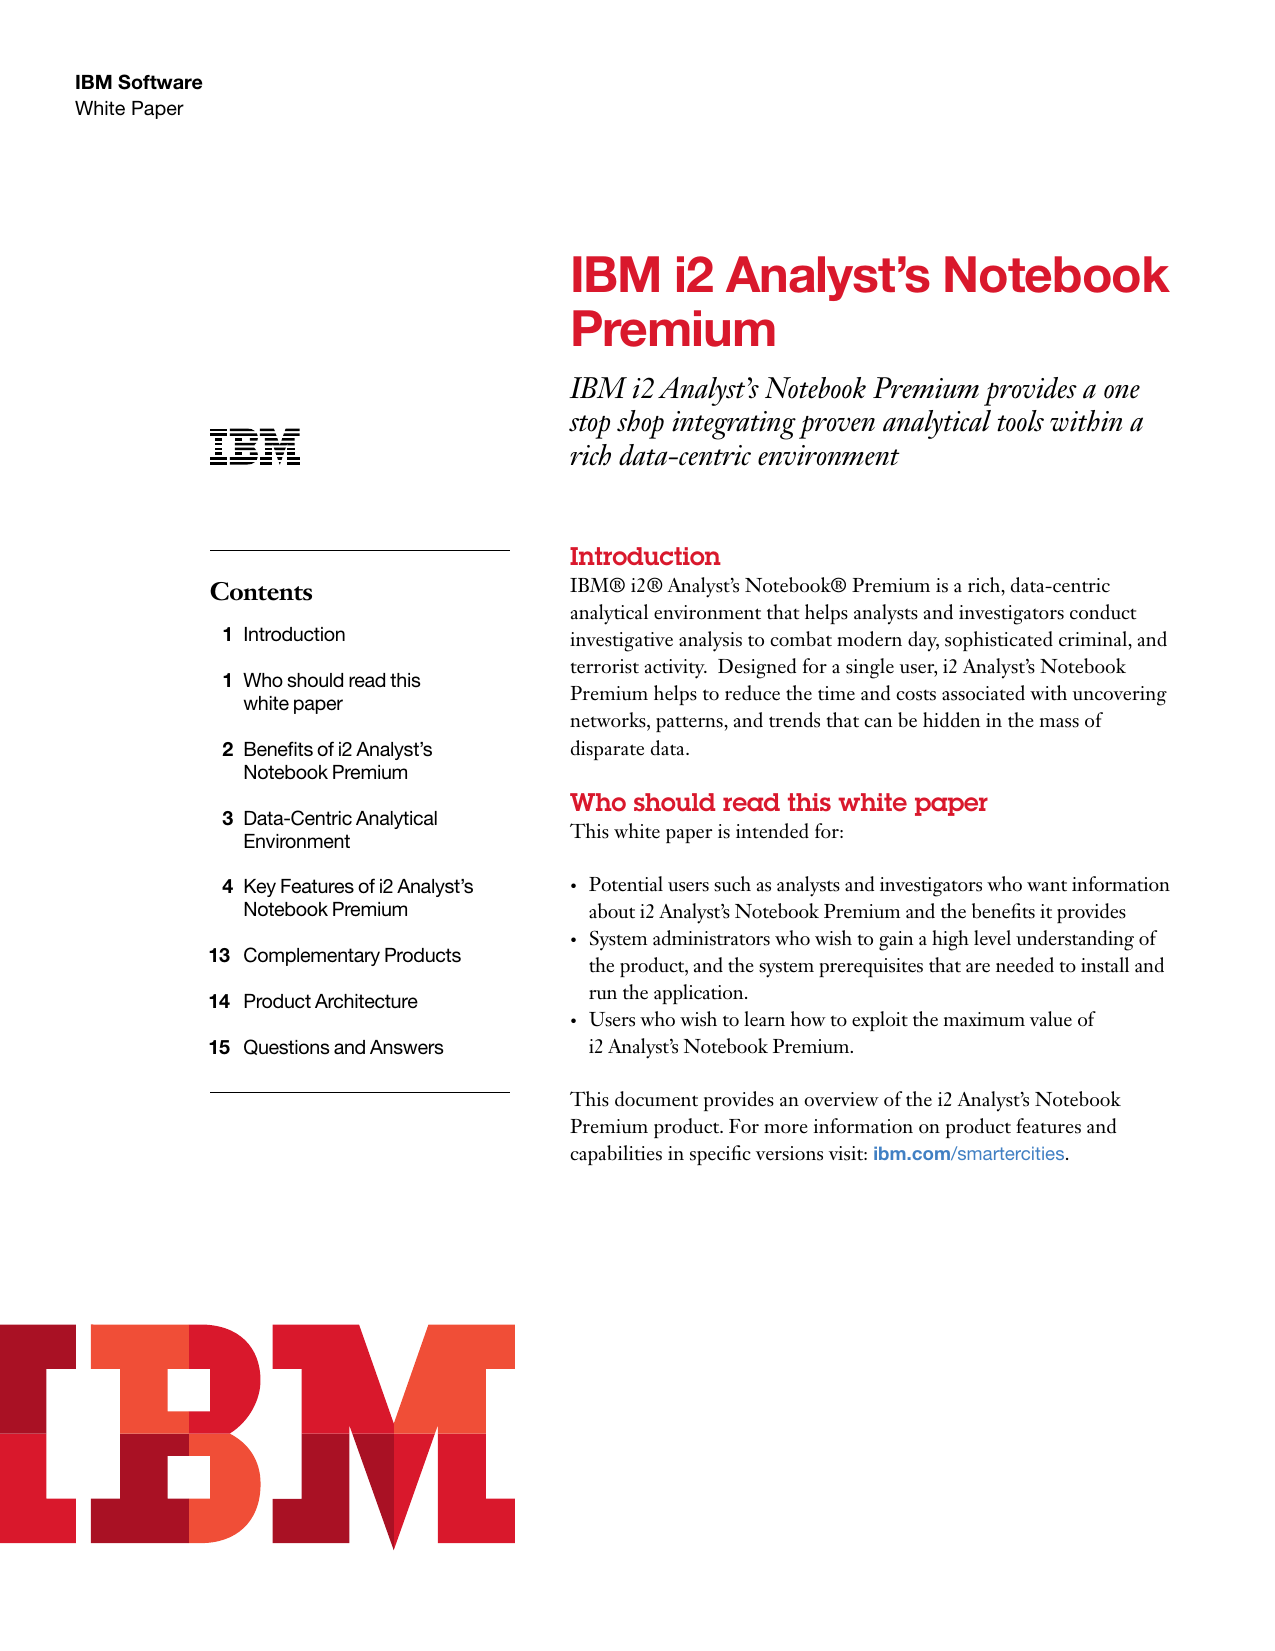 ibm i2 analyst notebook price